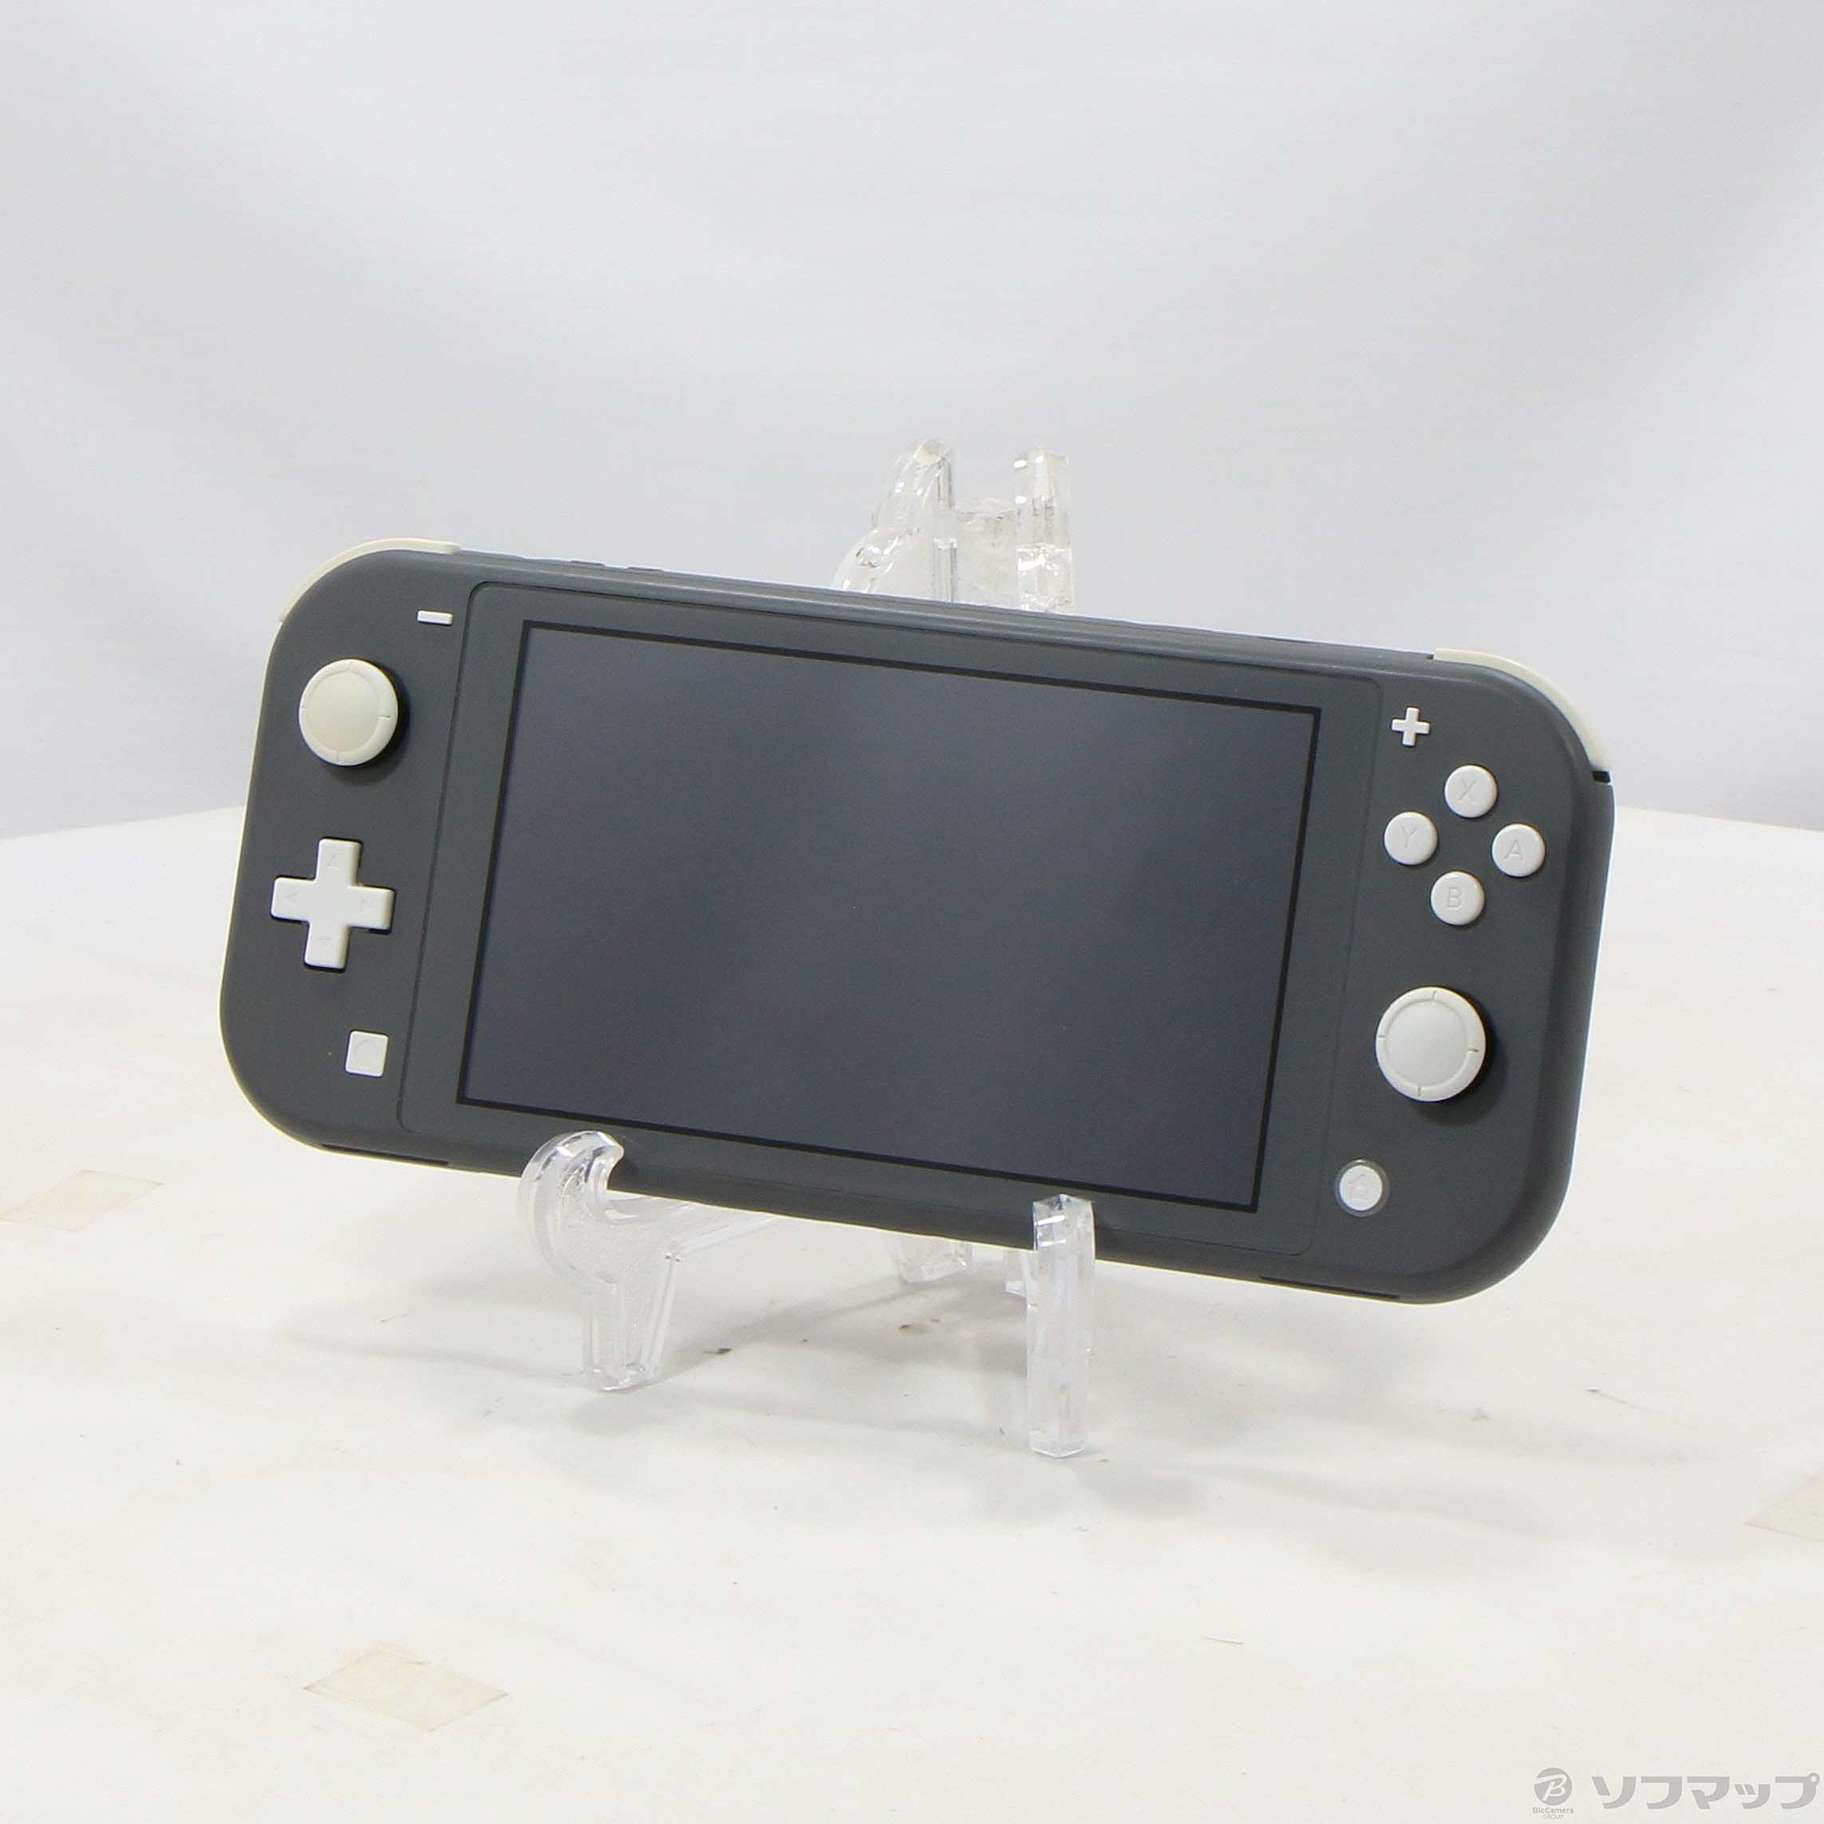 【新品未開封】Nintendo Switch Lite グレー